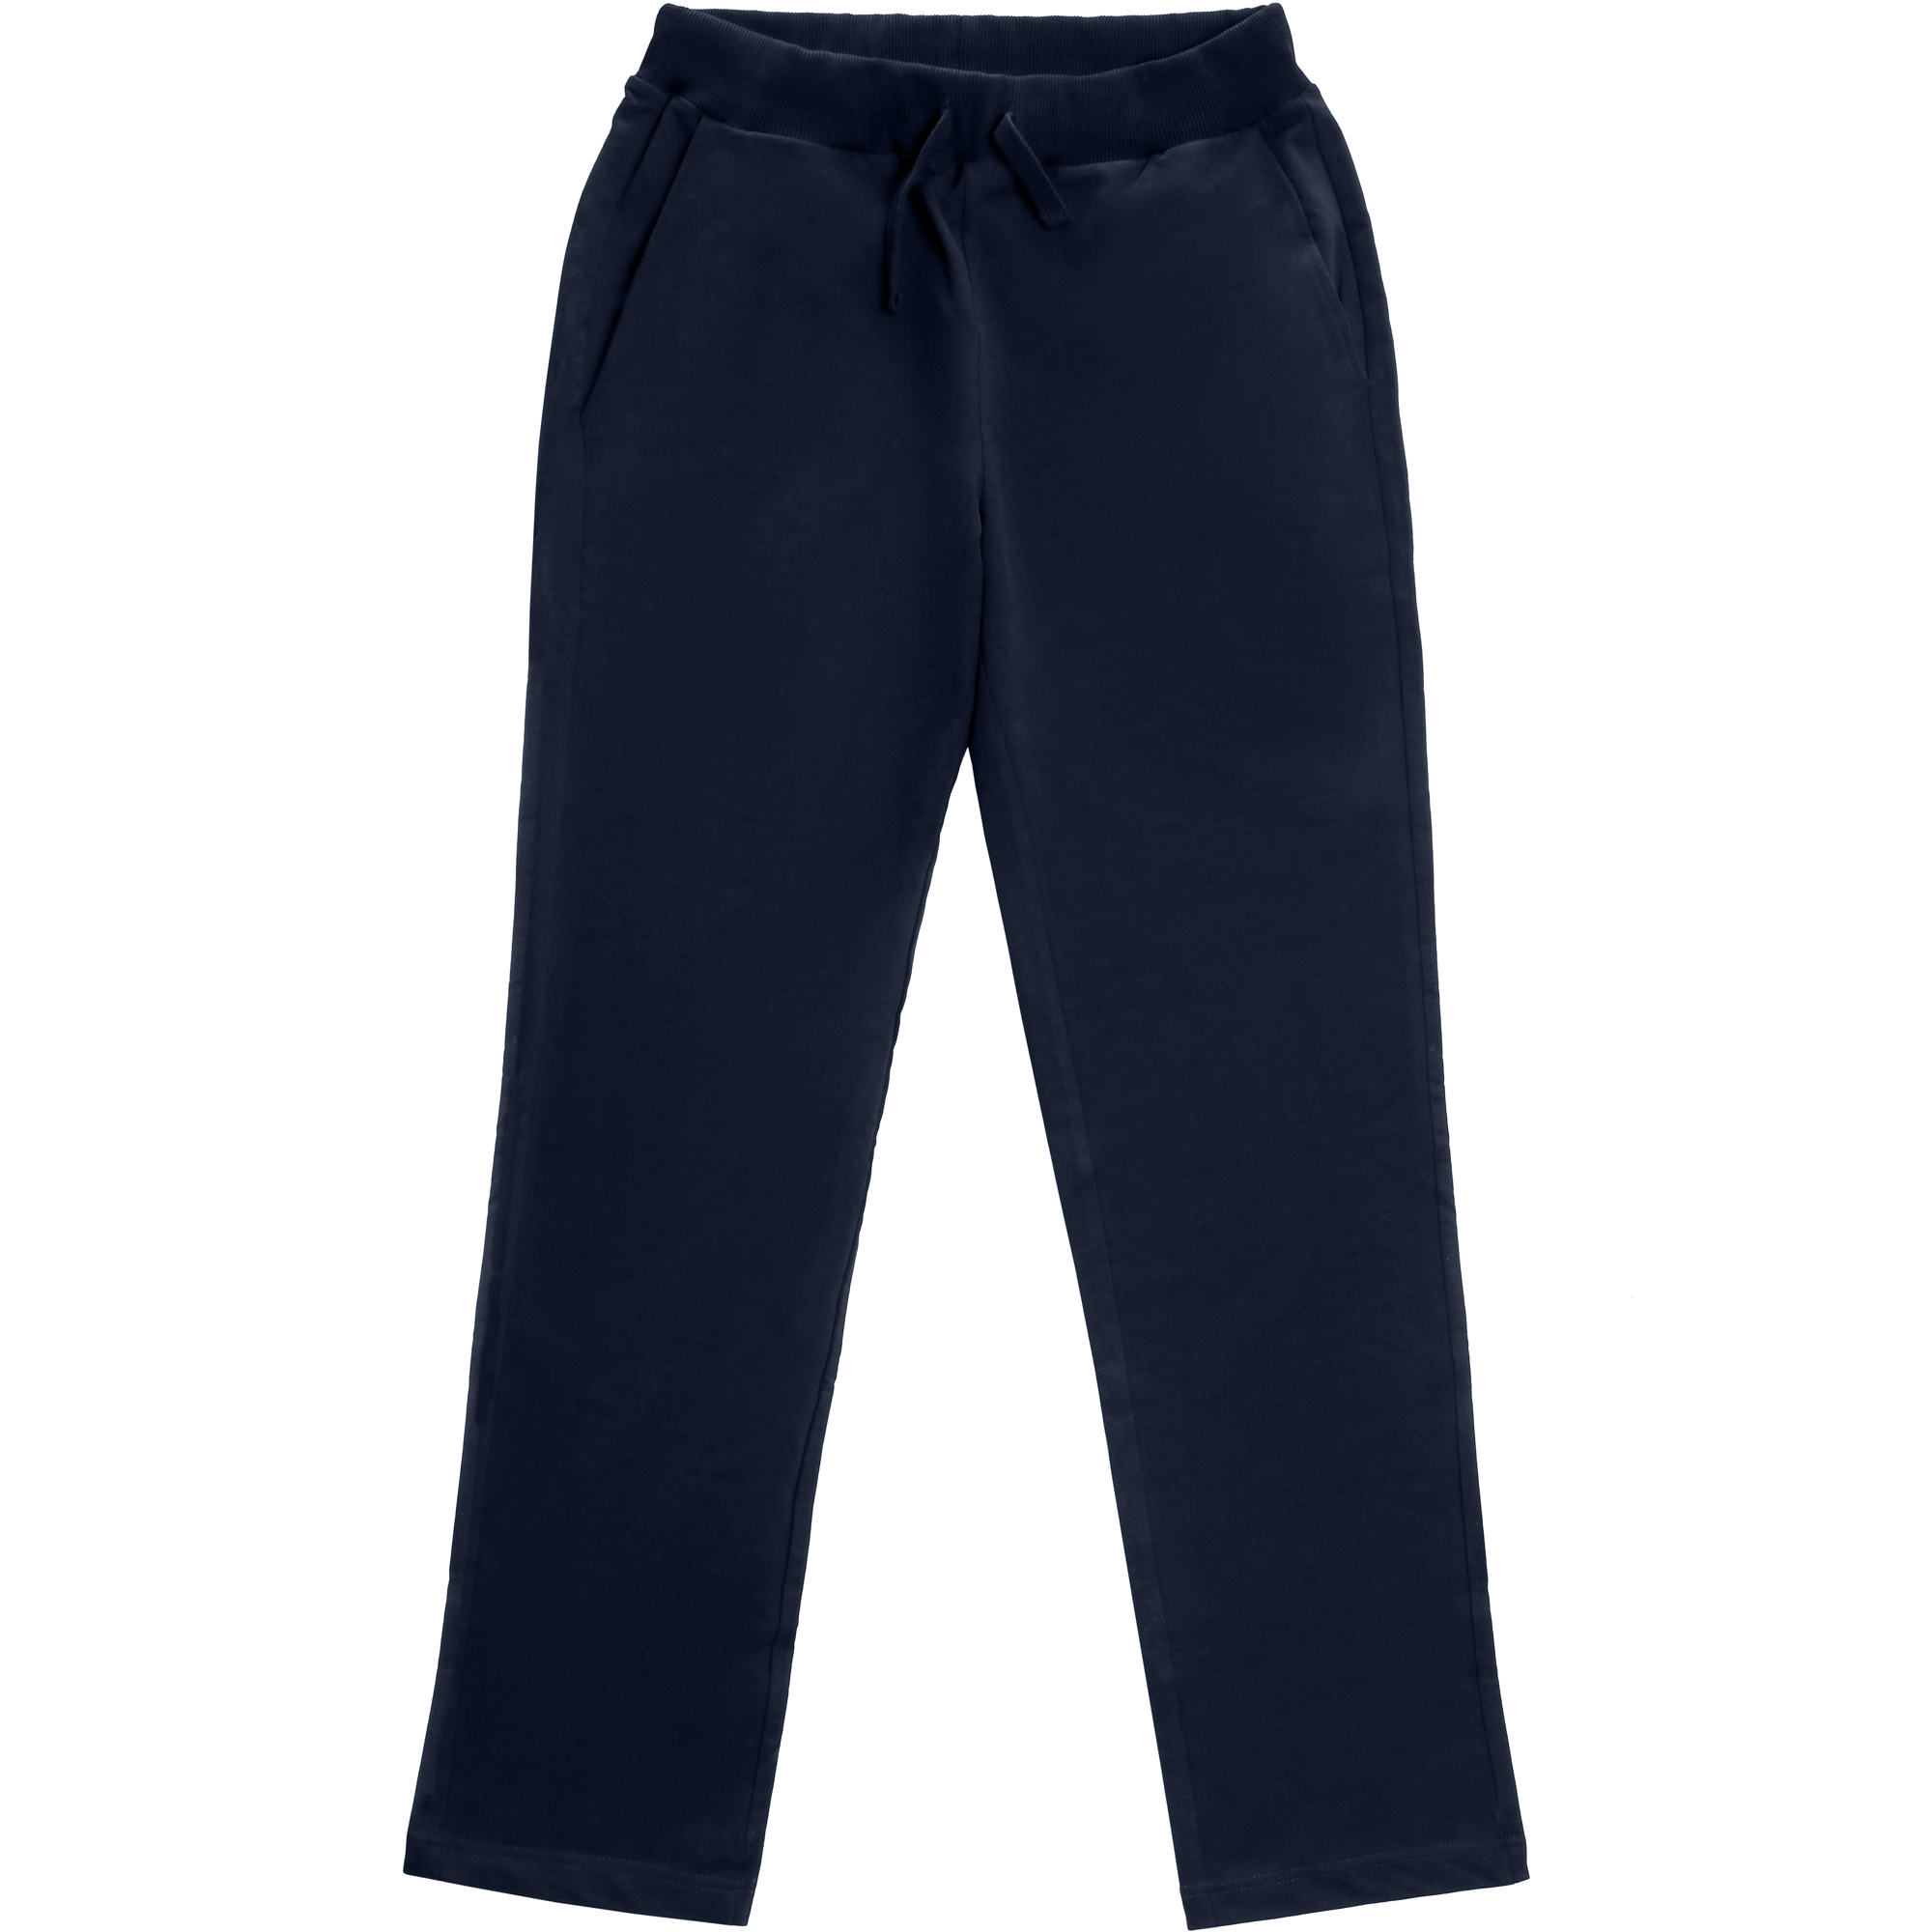 Мужские брюки Birlik тёмно-синие, цвет тёмно-синий, размер XXL